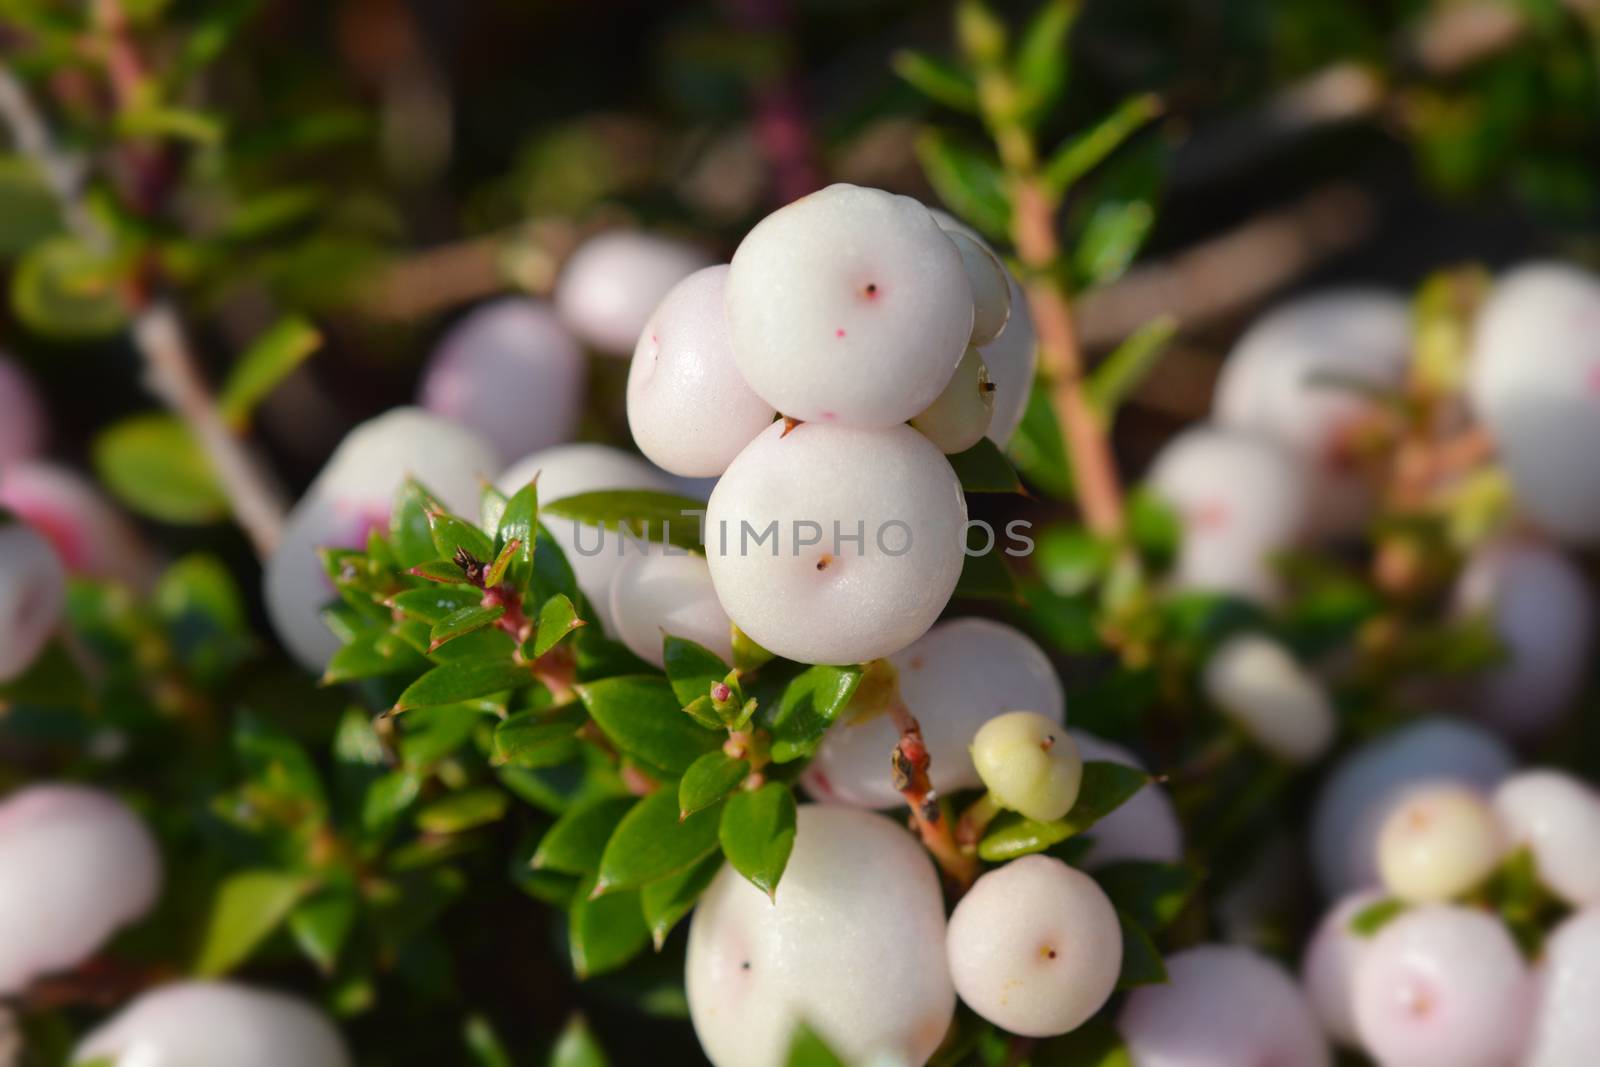 Prickly heath white berries - Latin name - Gaultheria mucronata (Pernettya mucronata)